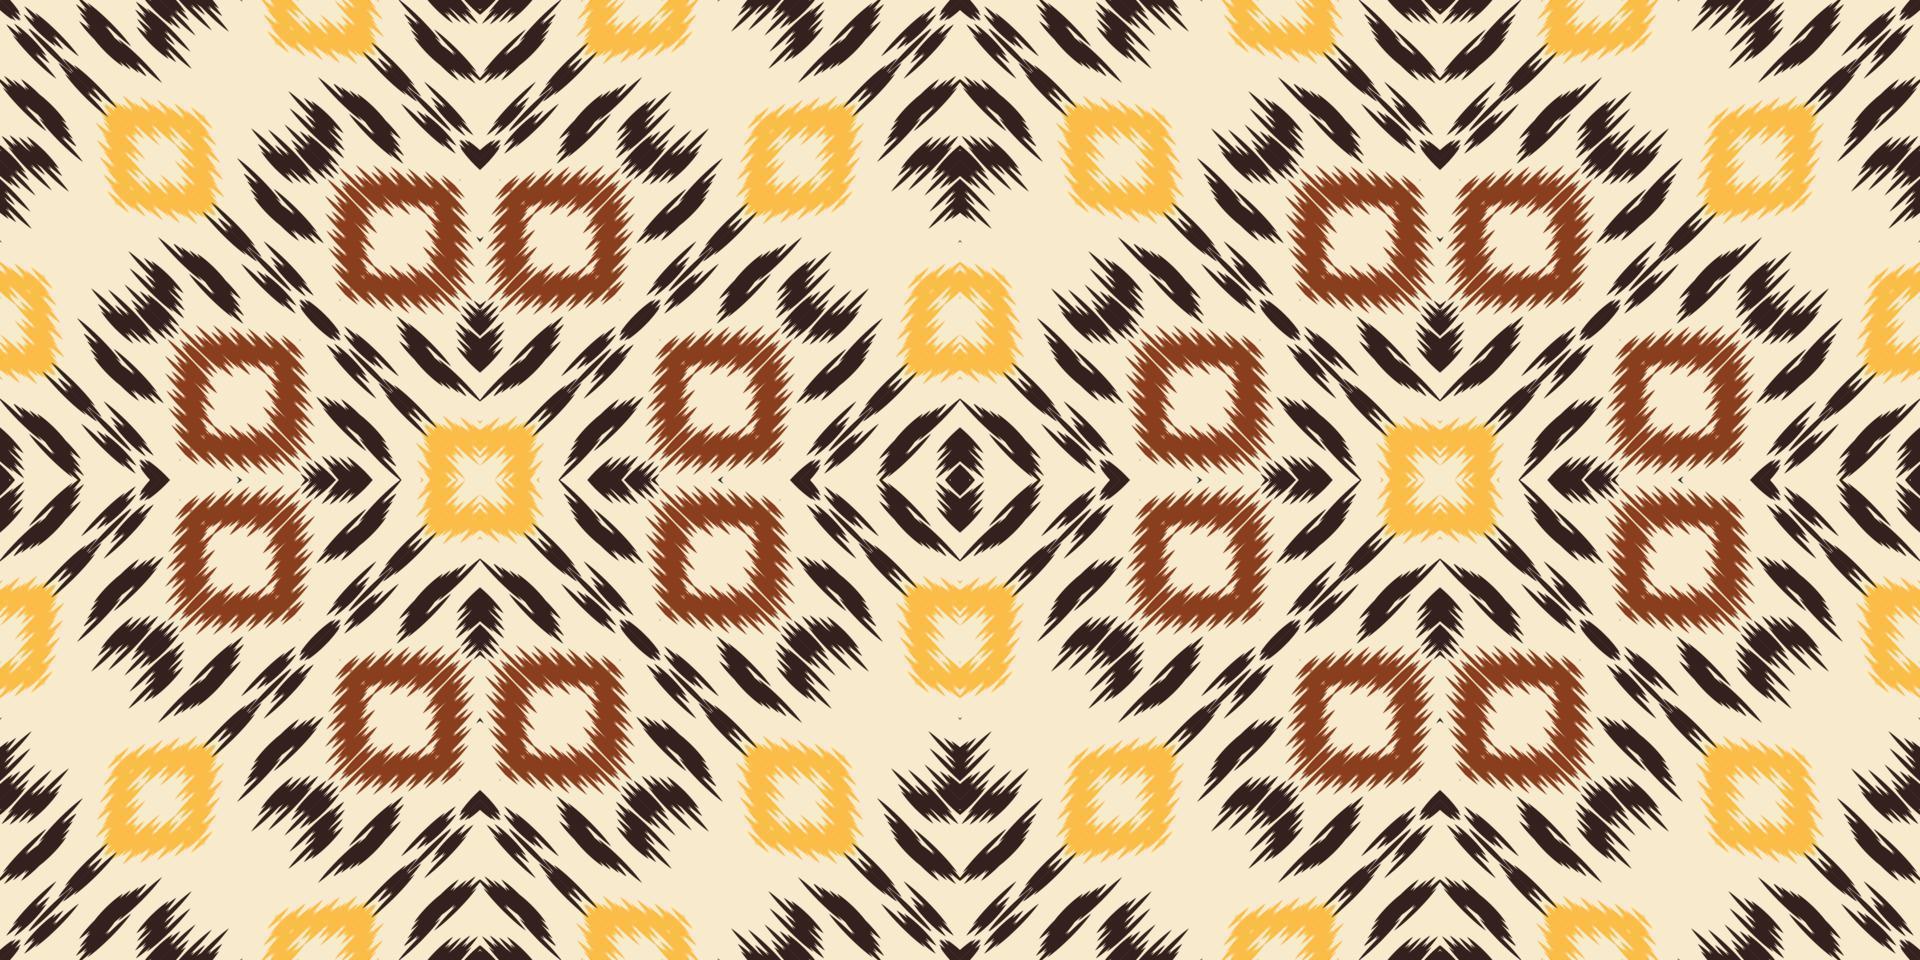 ikat-punkte stammes-afrika nahtloses muster. ethnische geometrische ikkat batik digitaler vektor textildesign für drucke stoff saree mughal pinsel symbol schwaden textur kurti kurtis kurtas